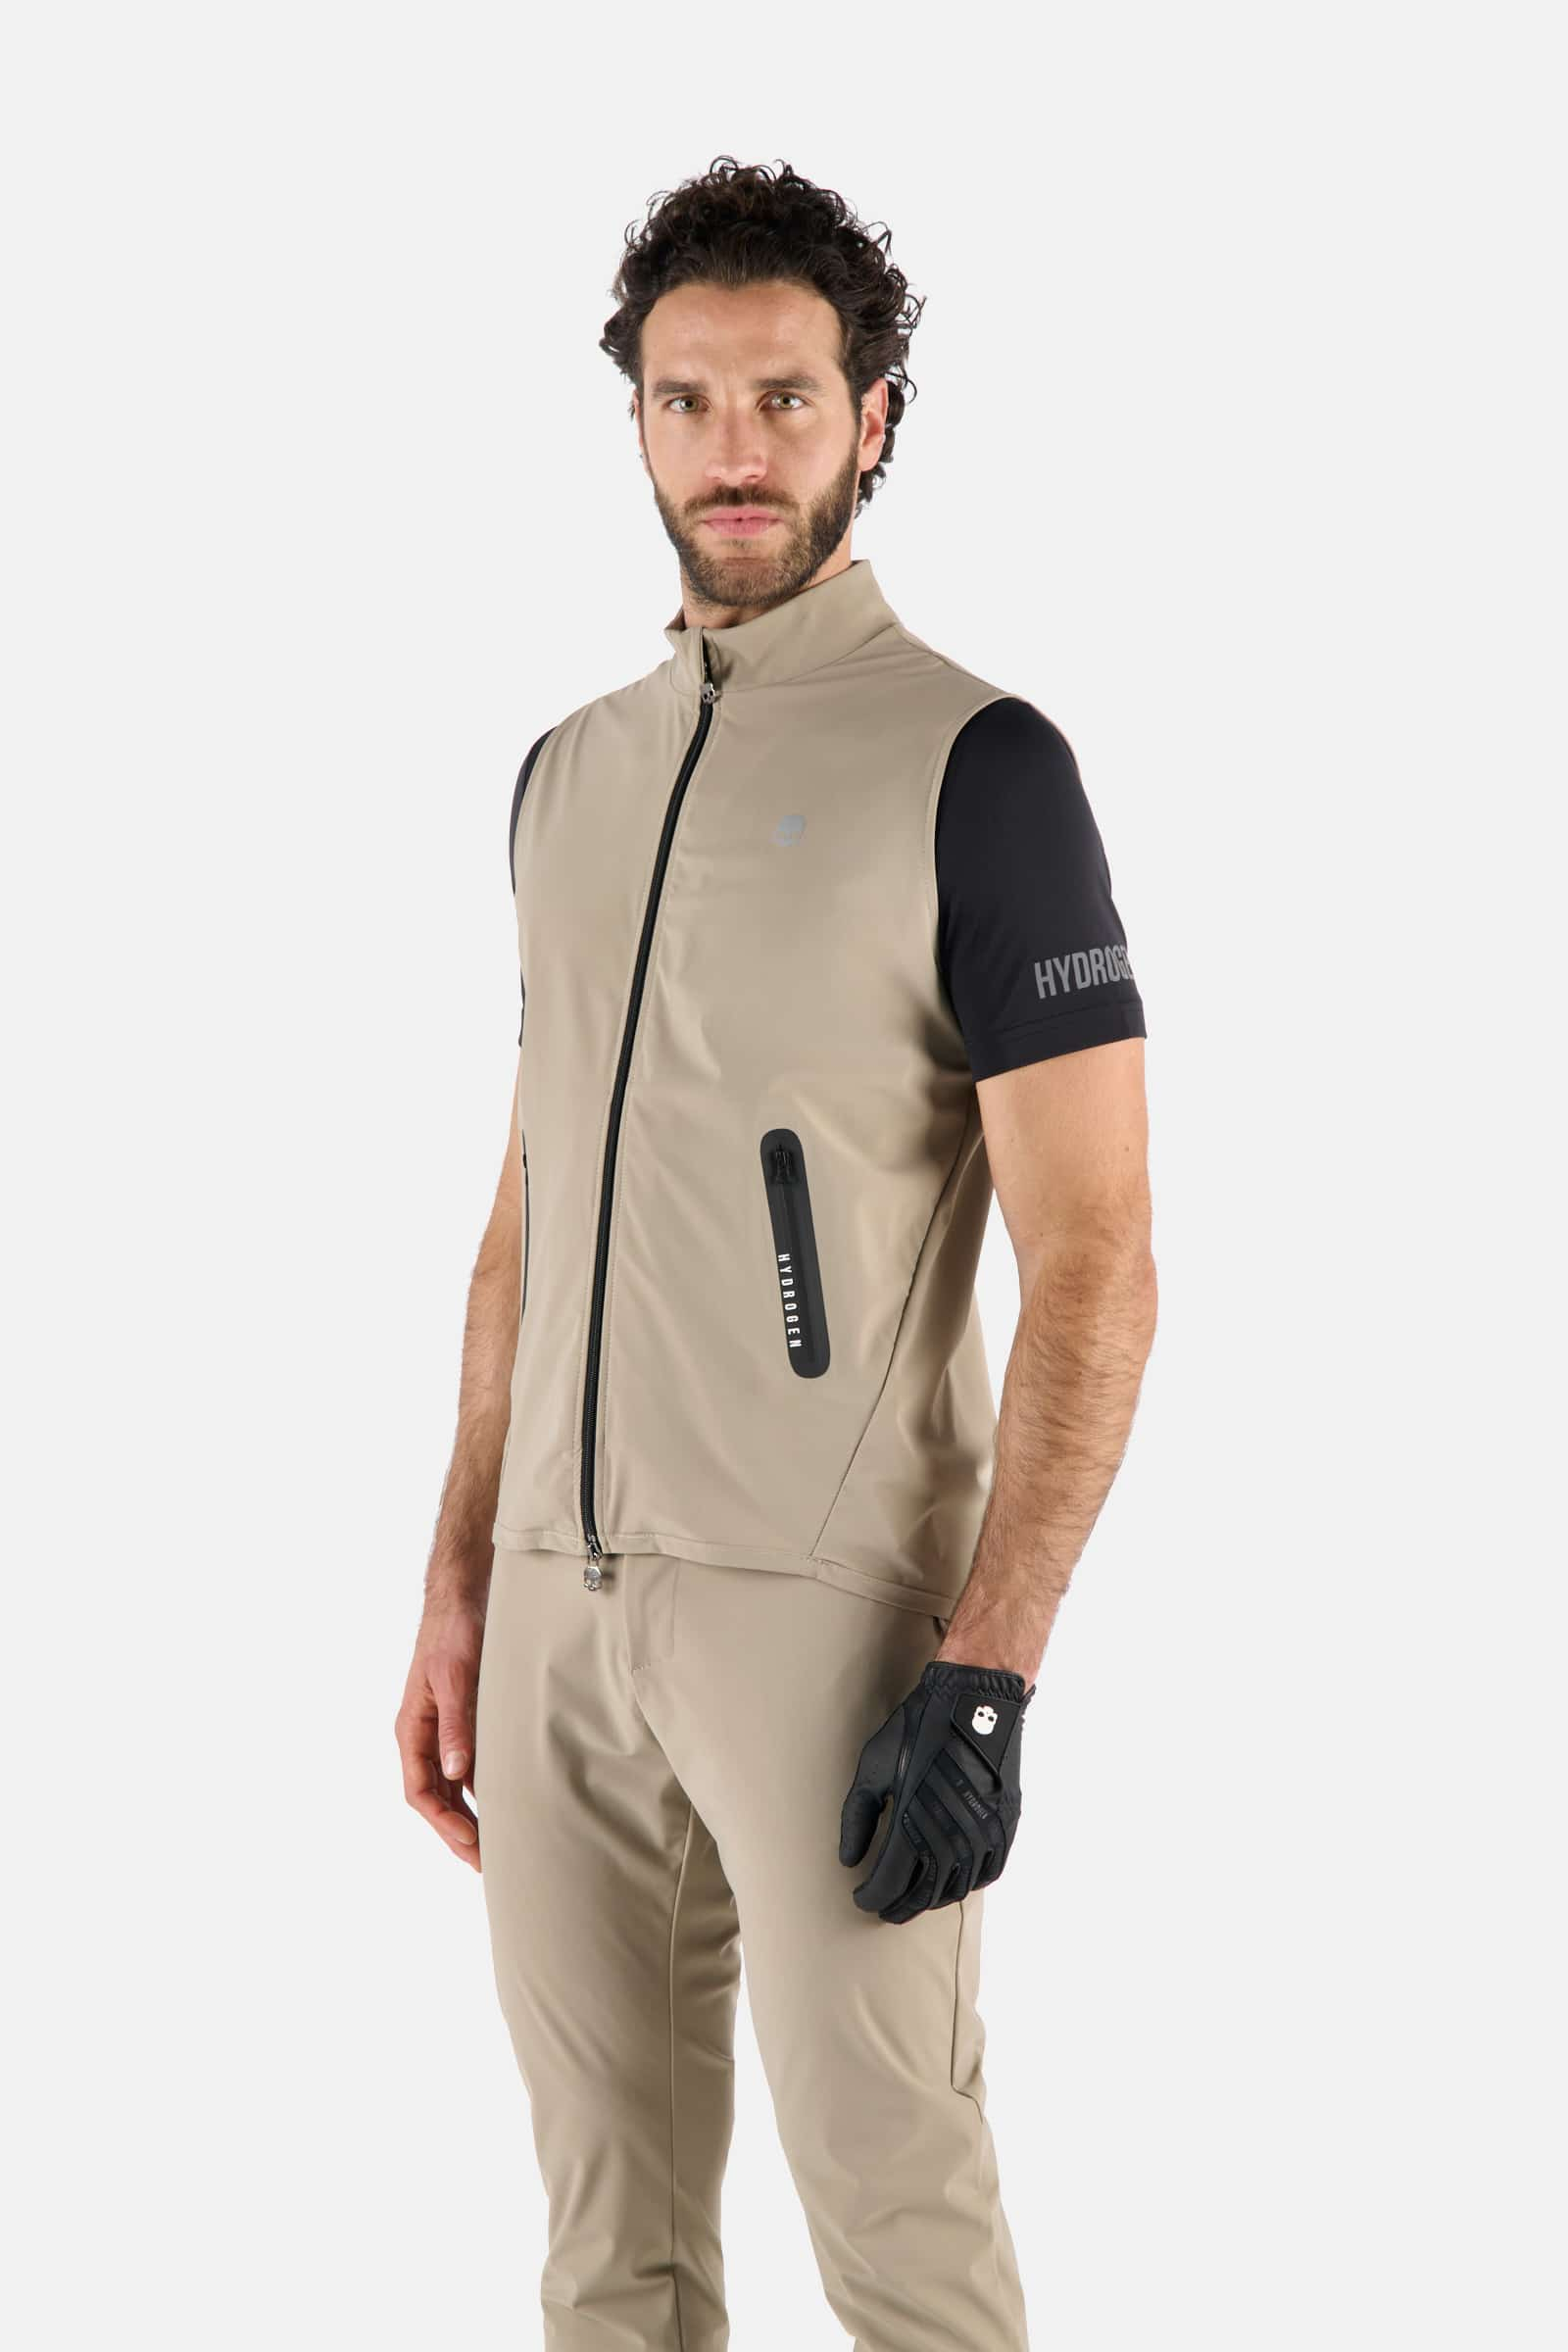 SMANICATO TECNICO - Abbigliamento - Outlet Hydrogen - Abbigliamento sportivo